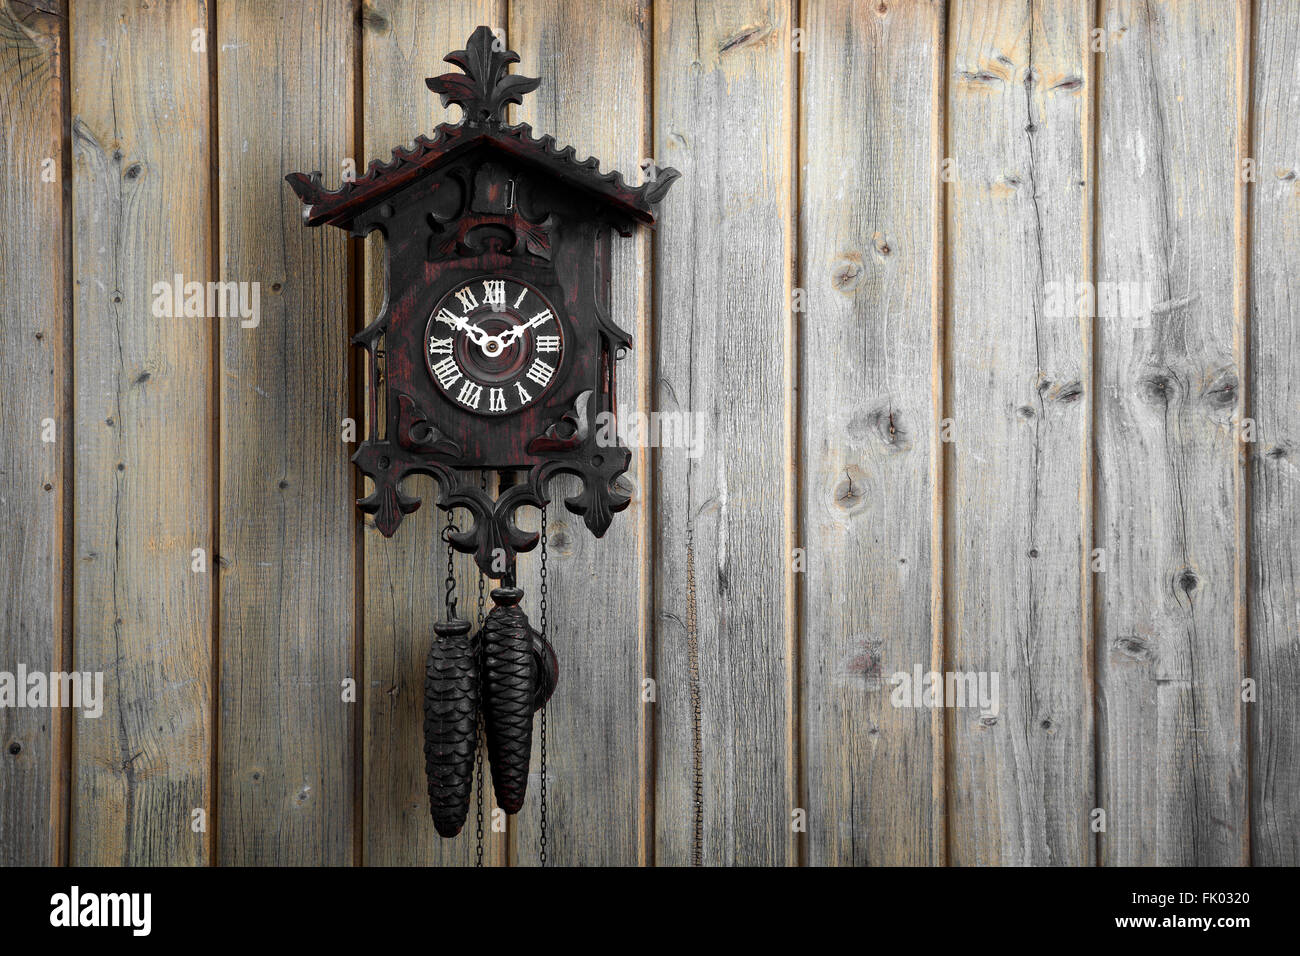 Vieille horloge coucou de la Forêt Noire, sur un mur en bois, Allemagne Banque D'Images